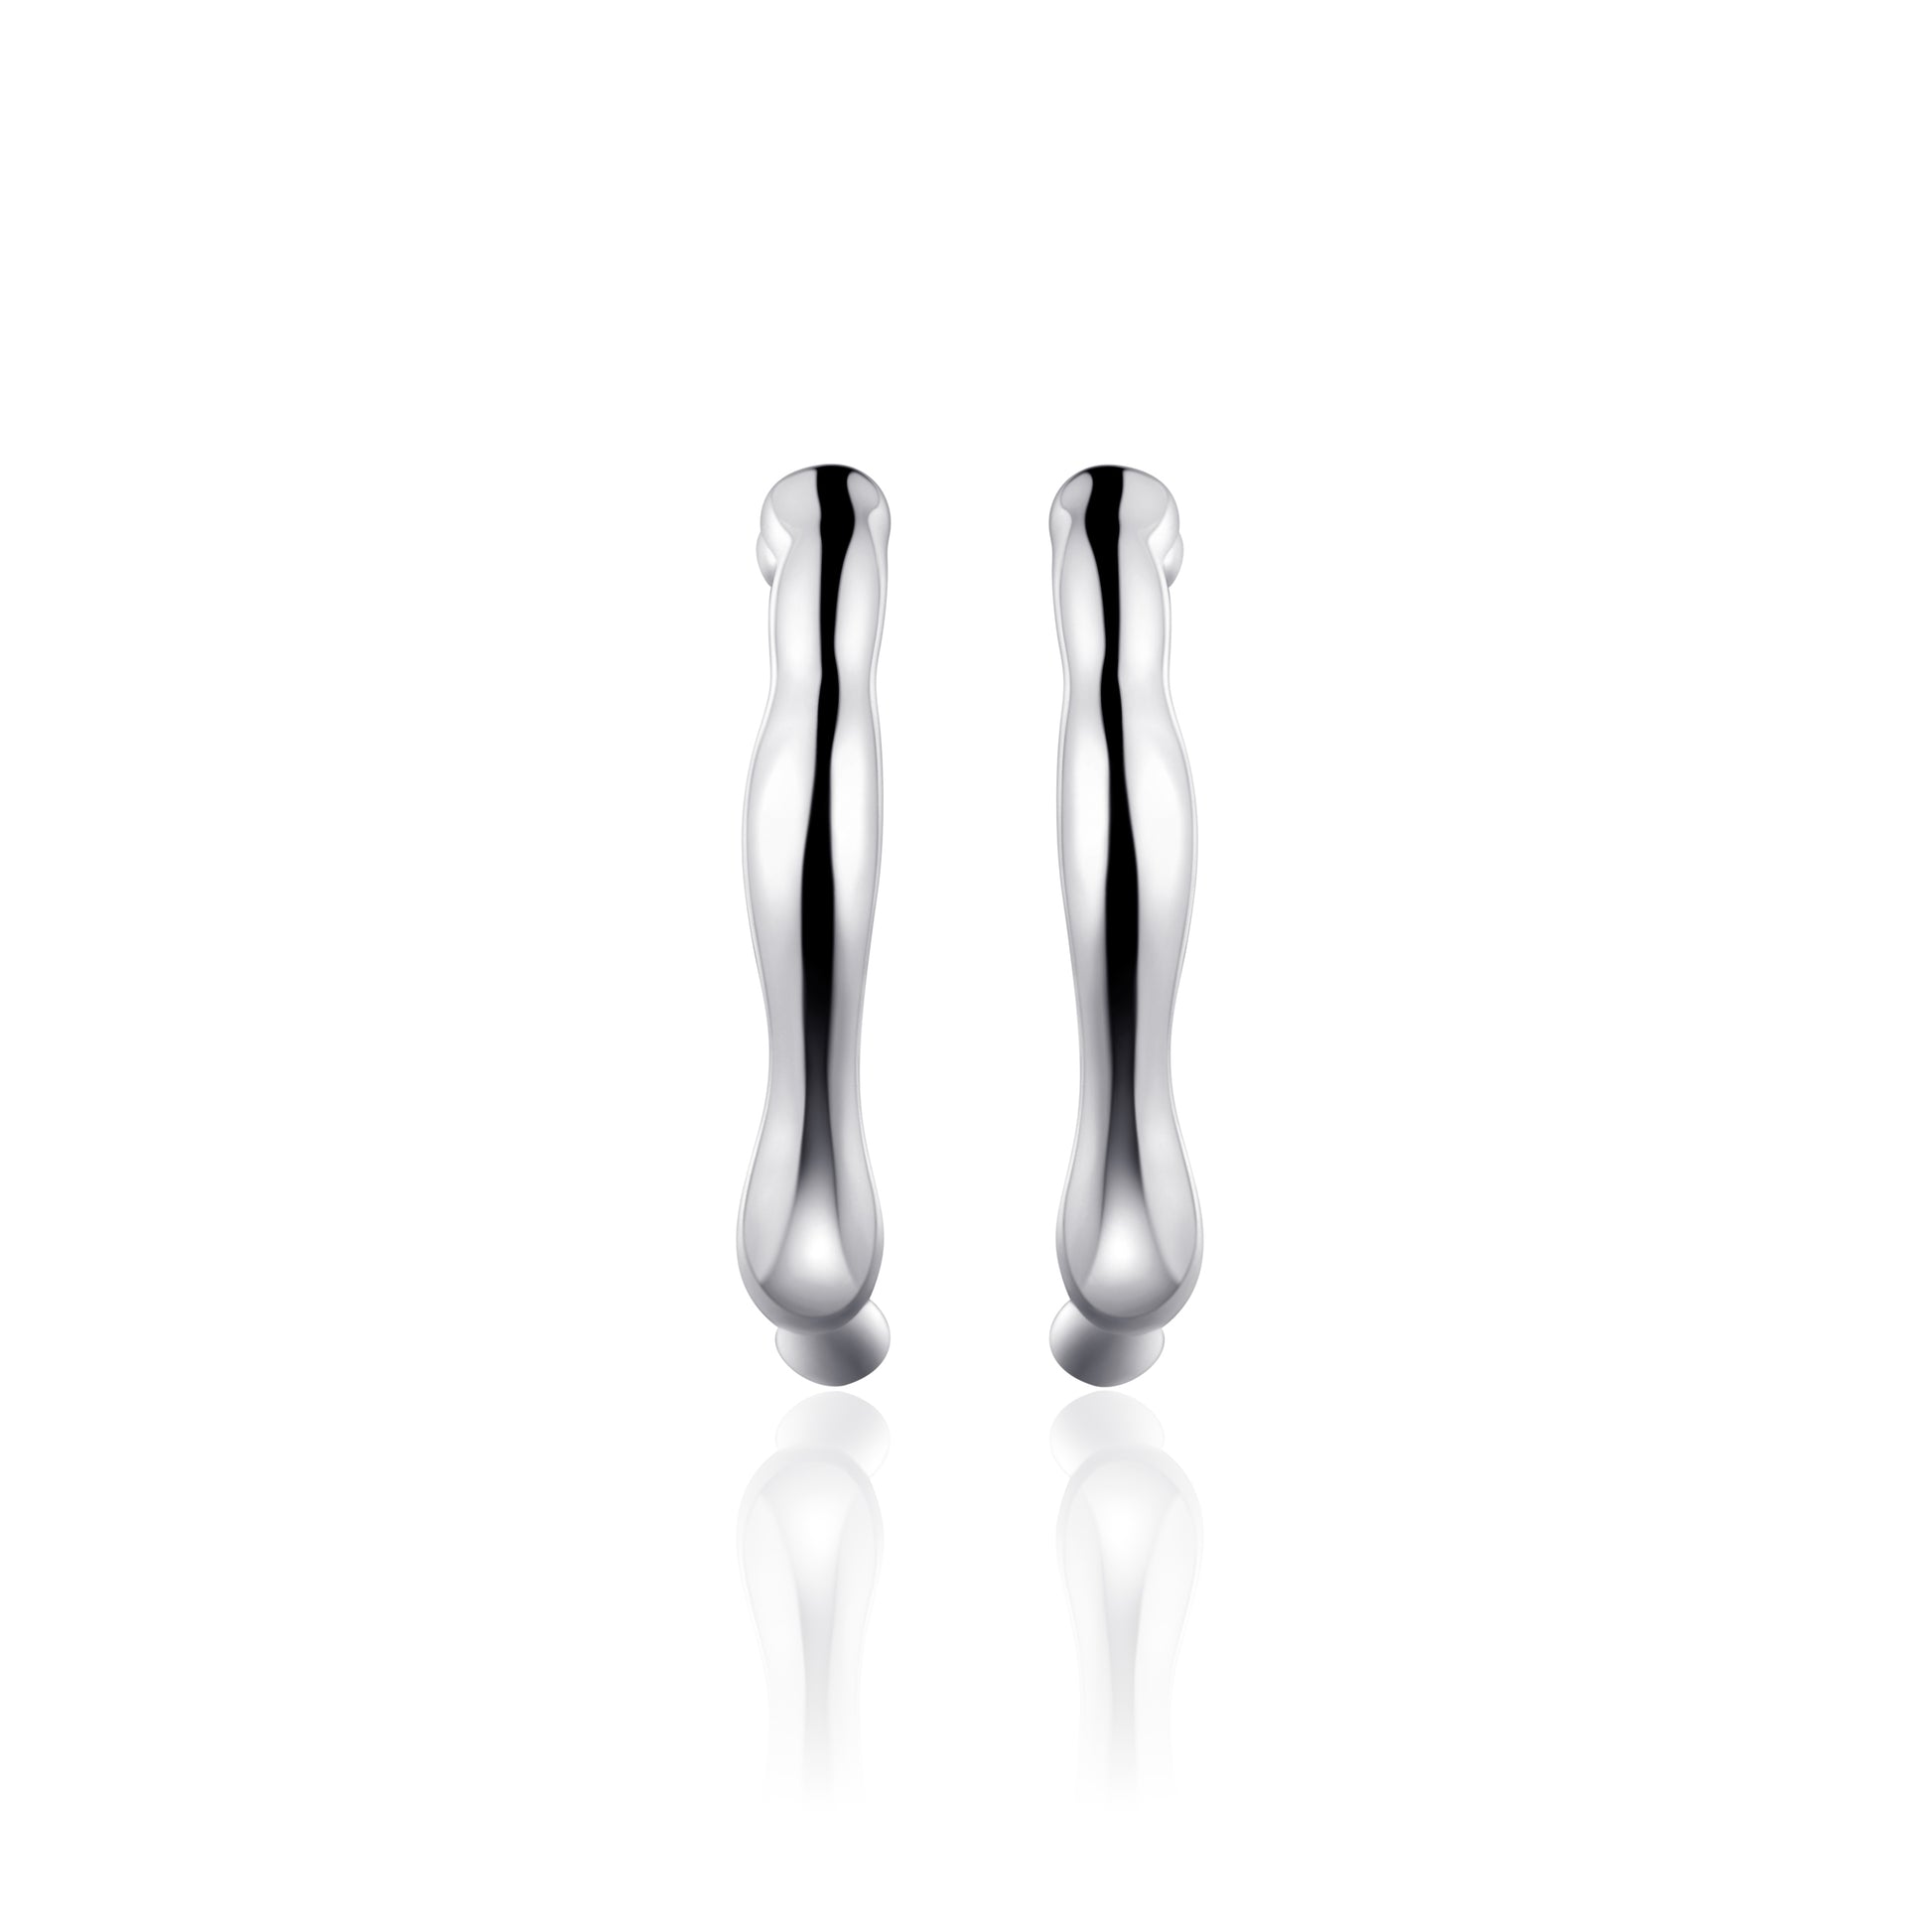 ORGANIC 24mm Hoop Earrings - Silver - John Ross Jewellers